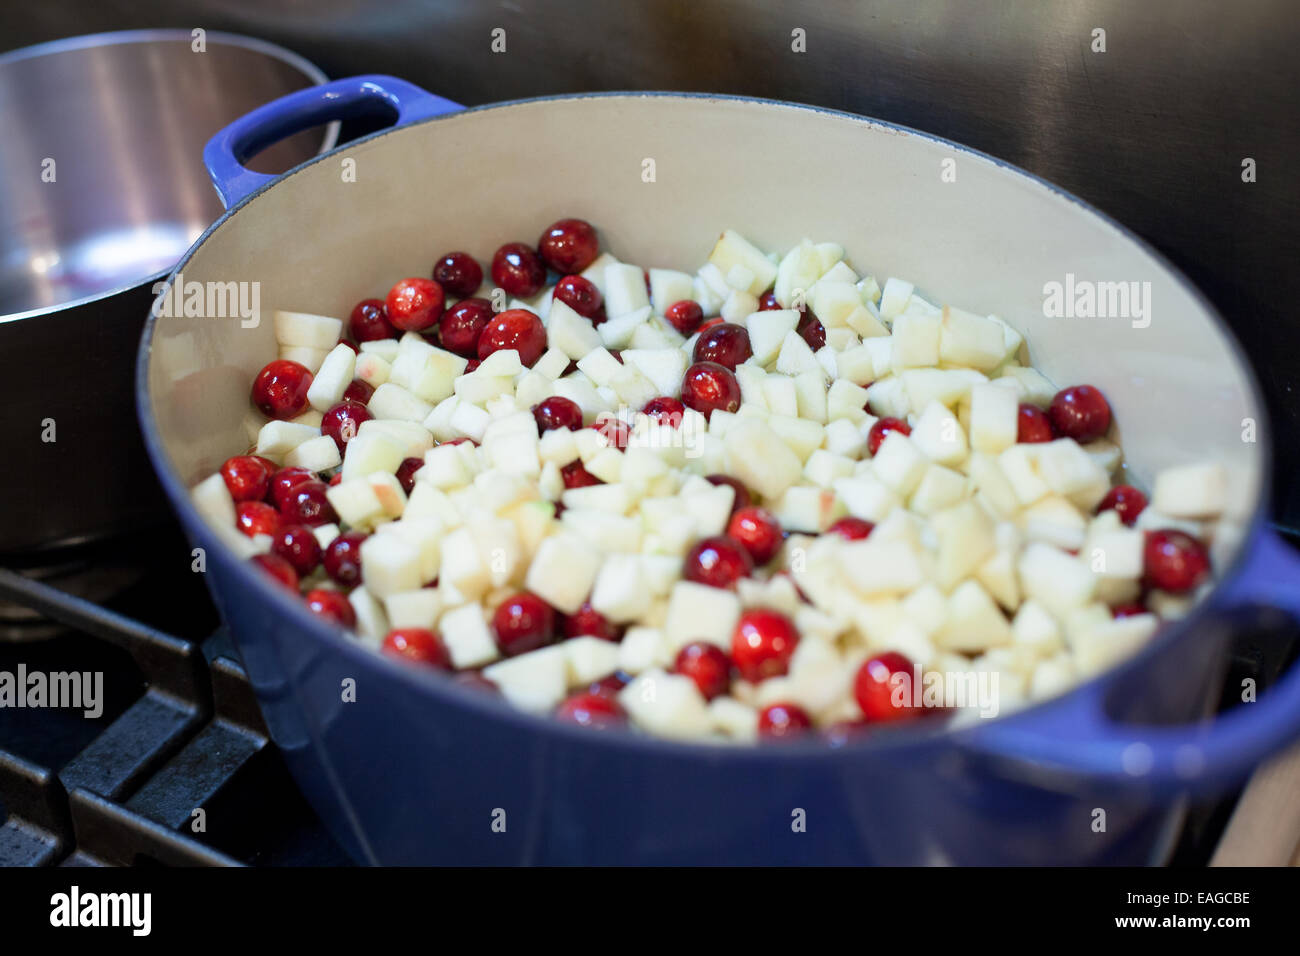 Mirtilli rossi freschi e tagliate a dadini le mele pronti per essere cucinati sulla stufa Foto Stock